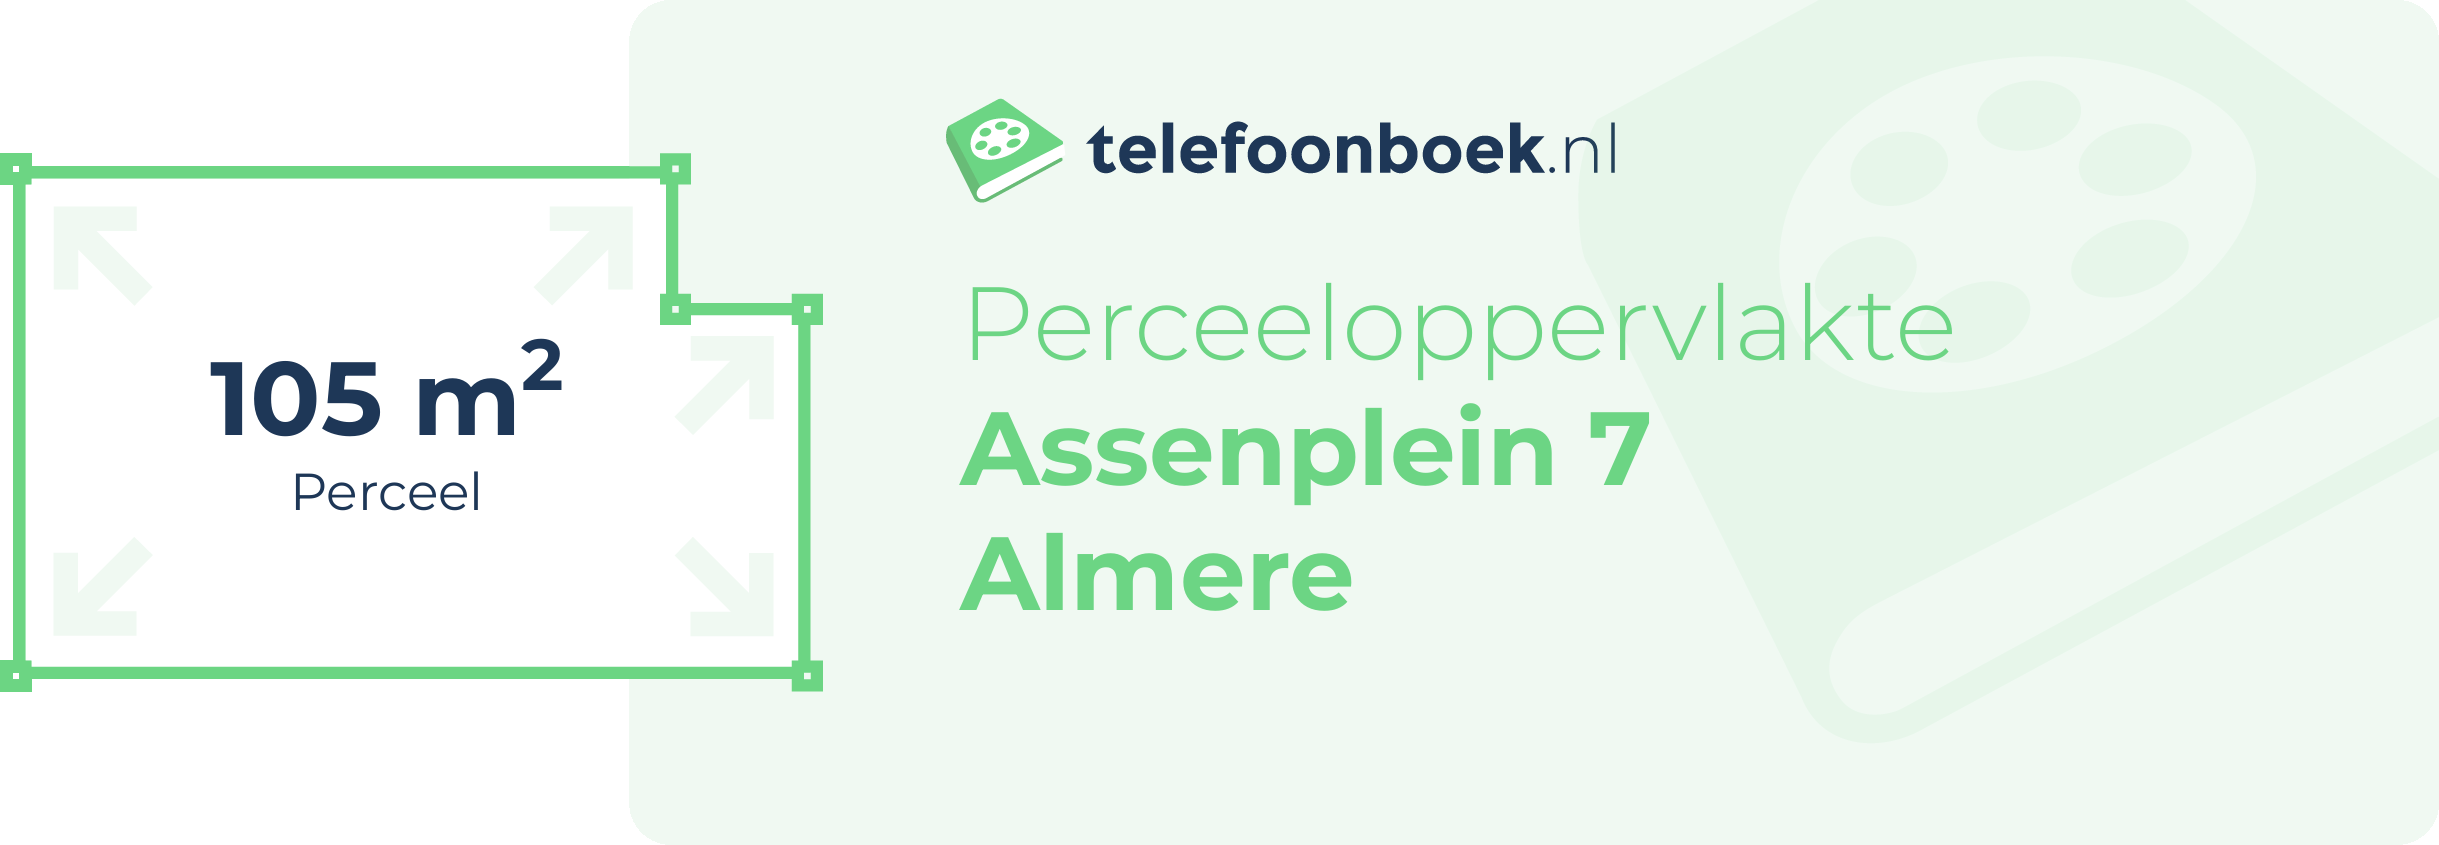 Perceeloppervlakte Assenplein 7 Almere